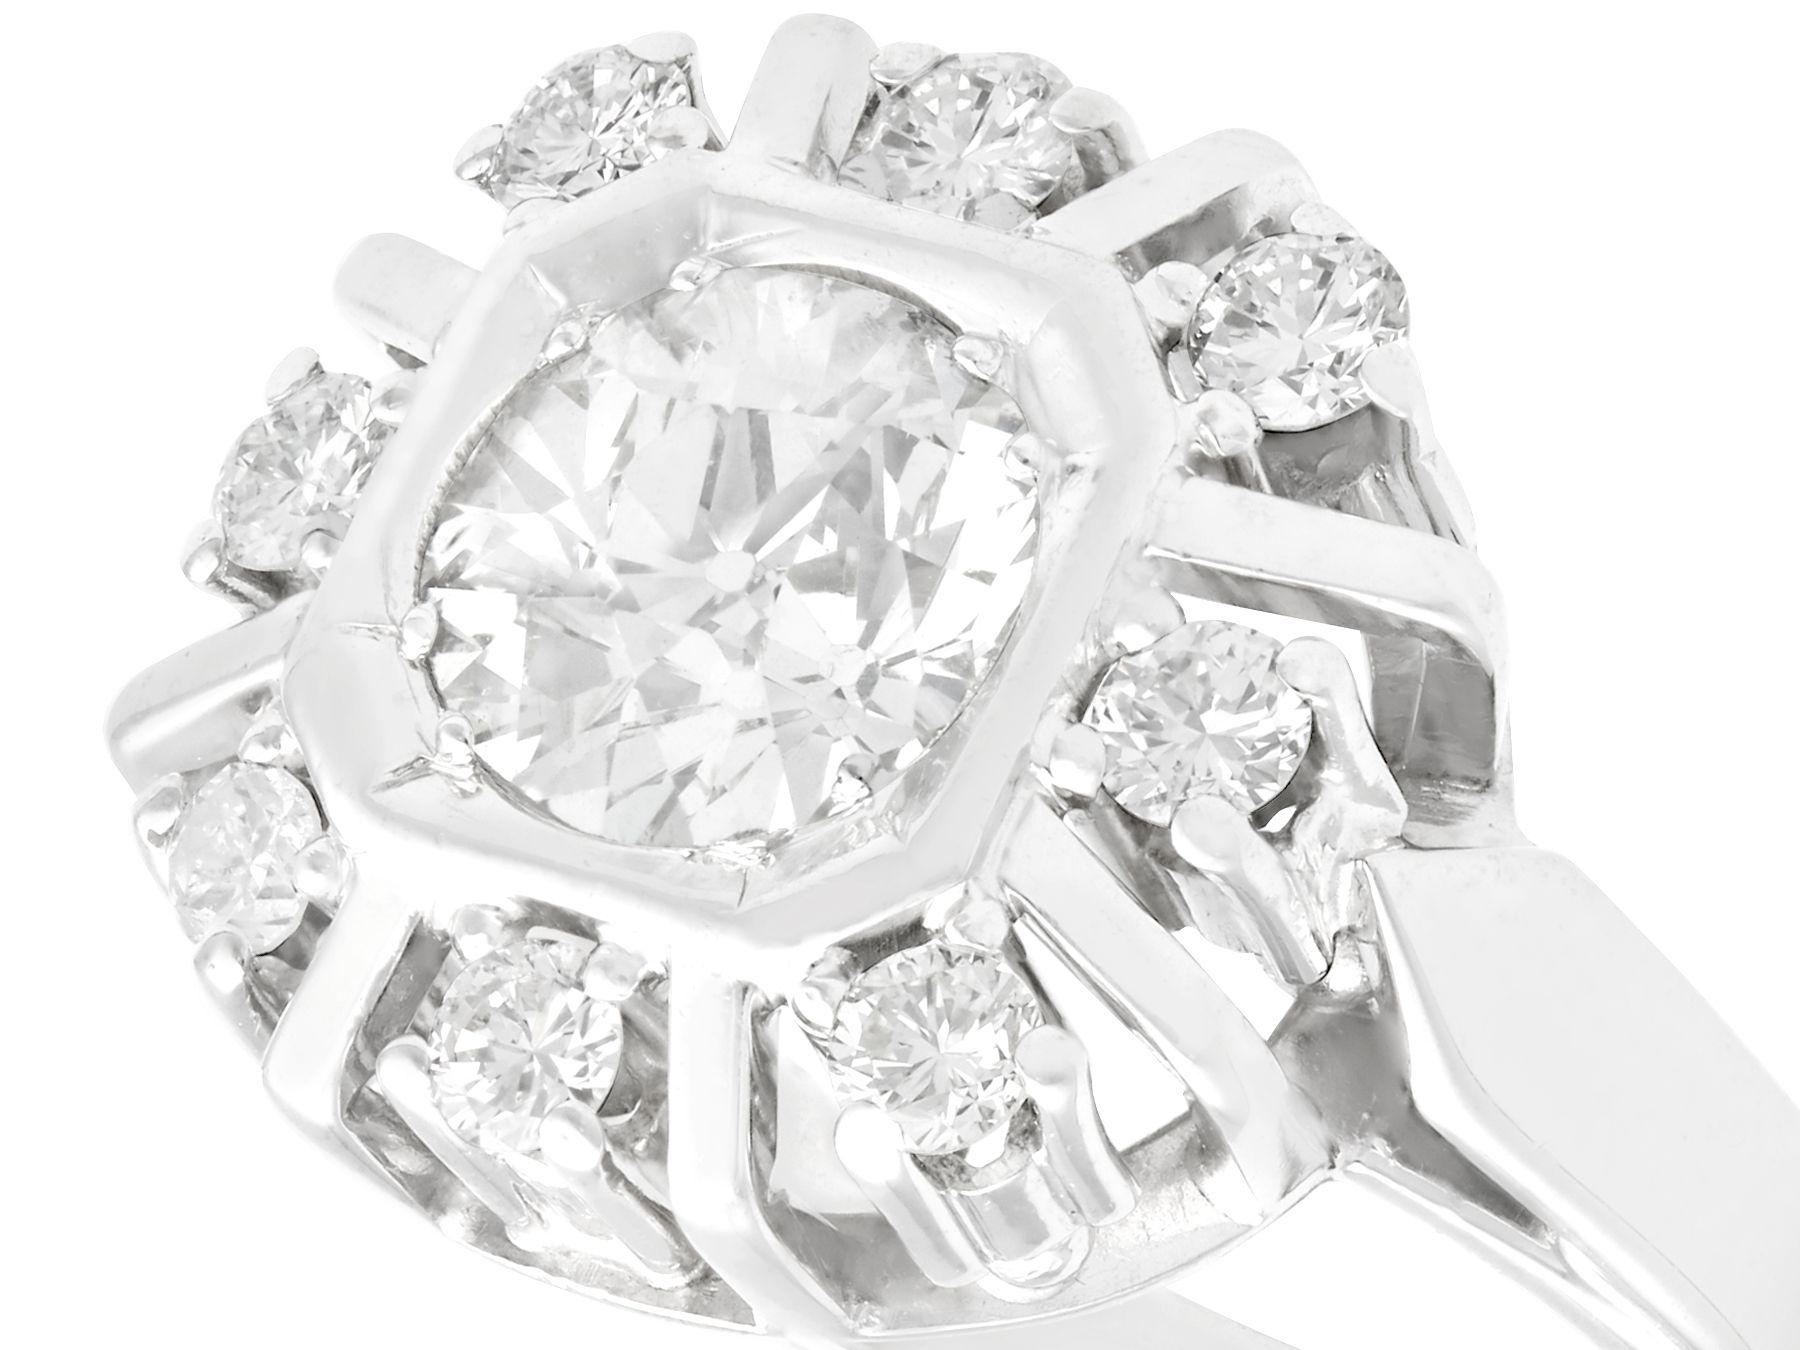 168 carat diamond price